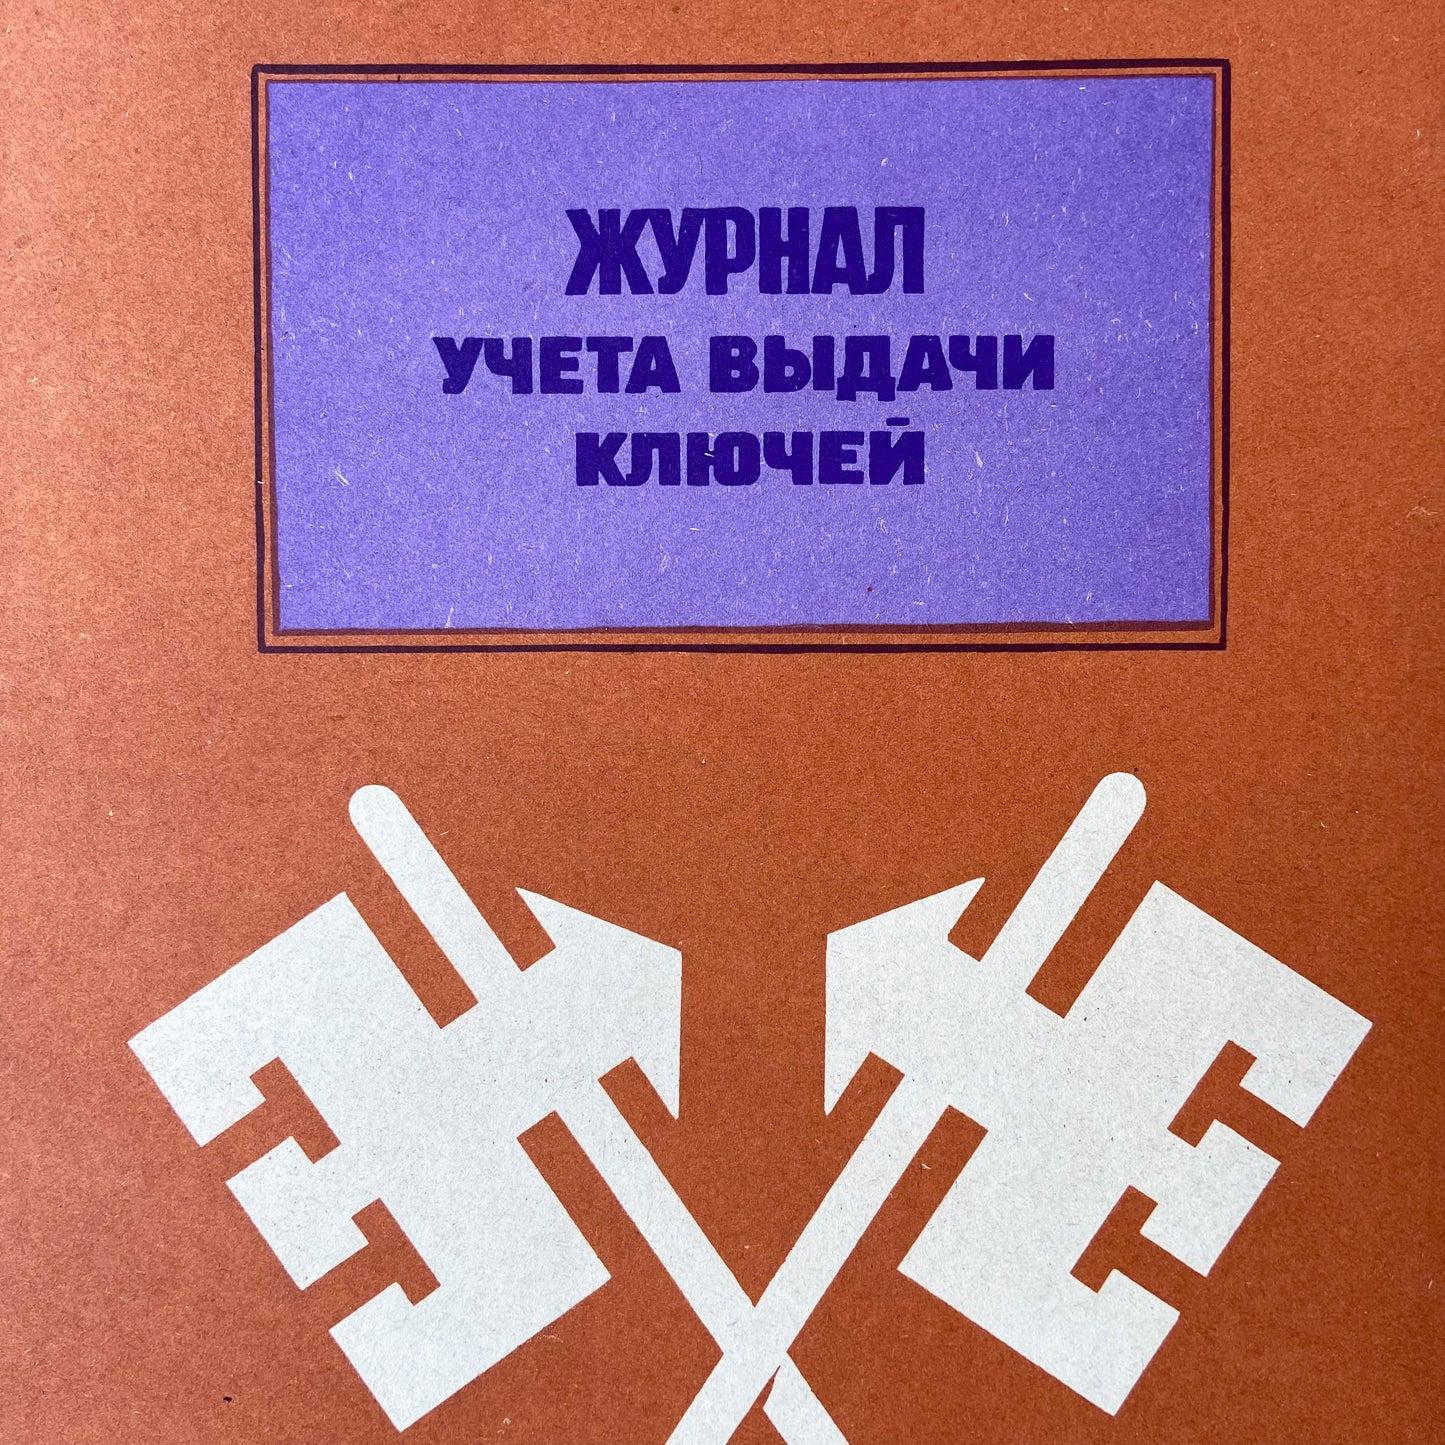 1986 Soviet Work Safety Poster #P775 - 17" x 23"